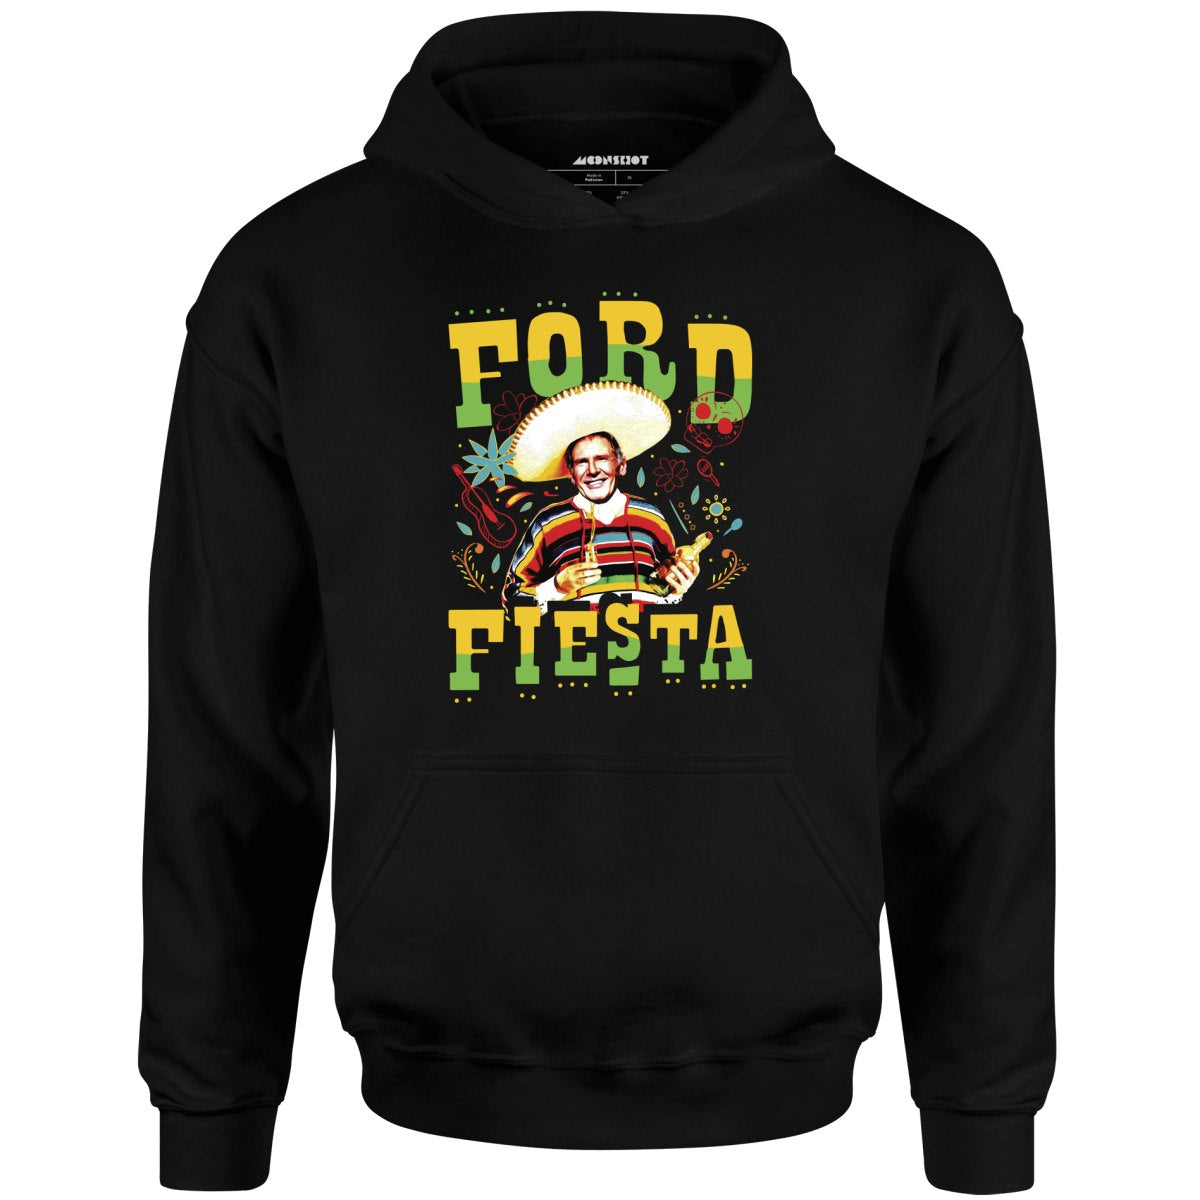 Ford Fiesta - Unisex Hoodie